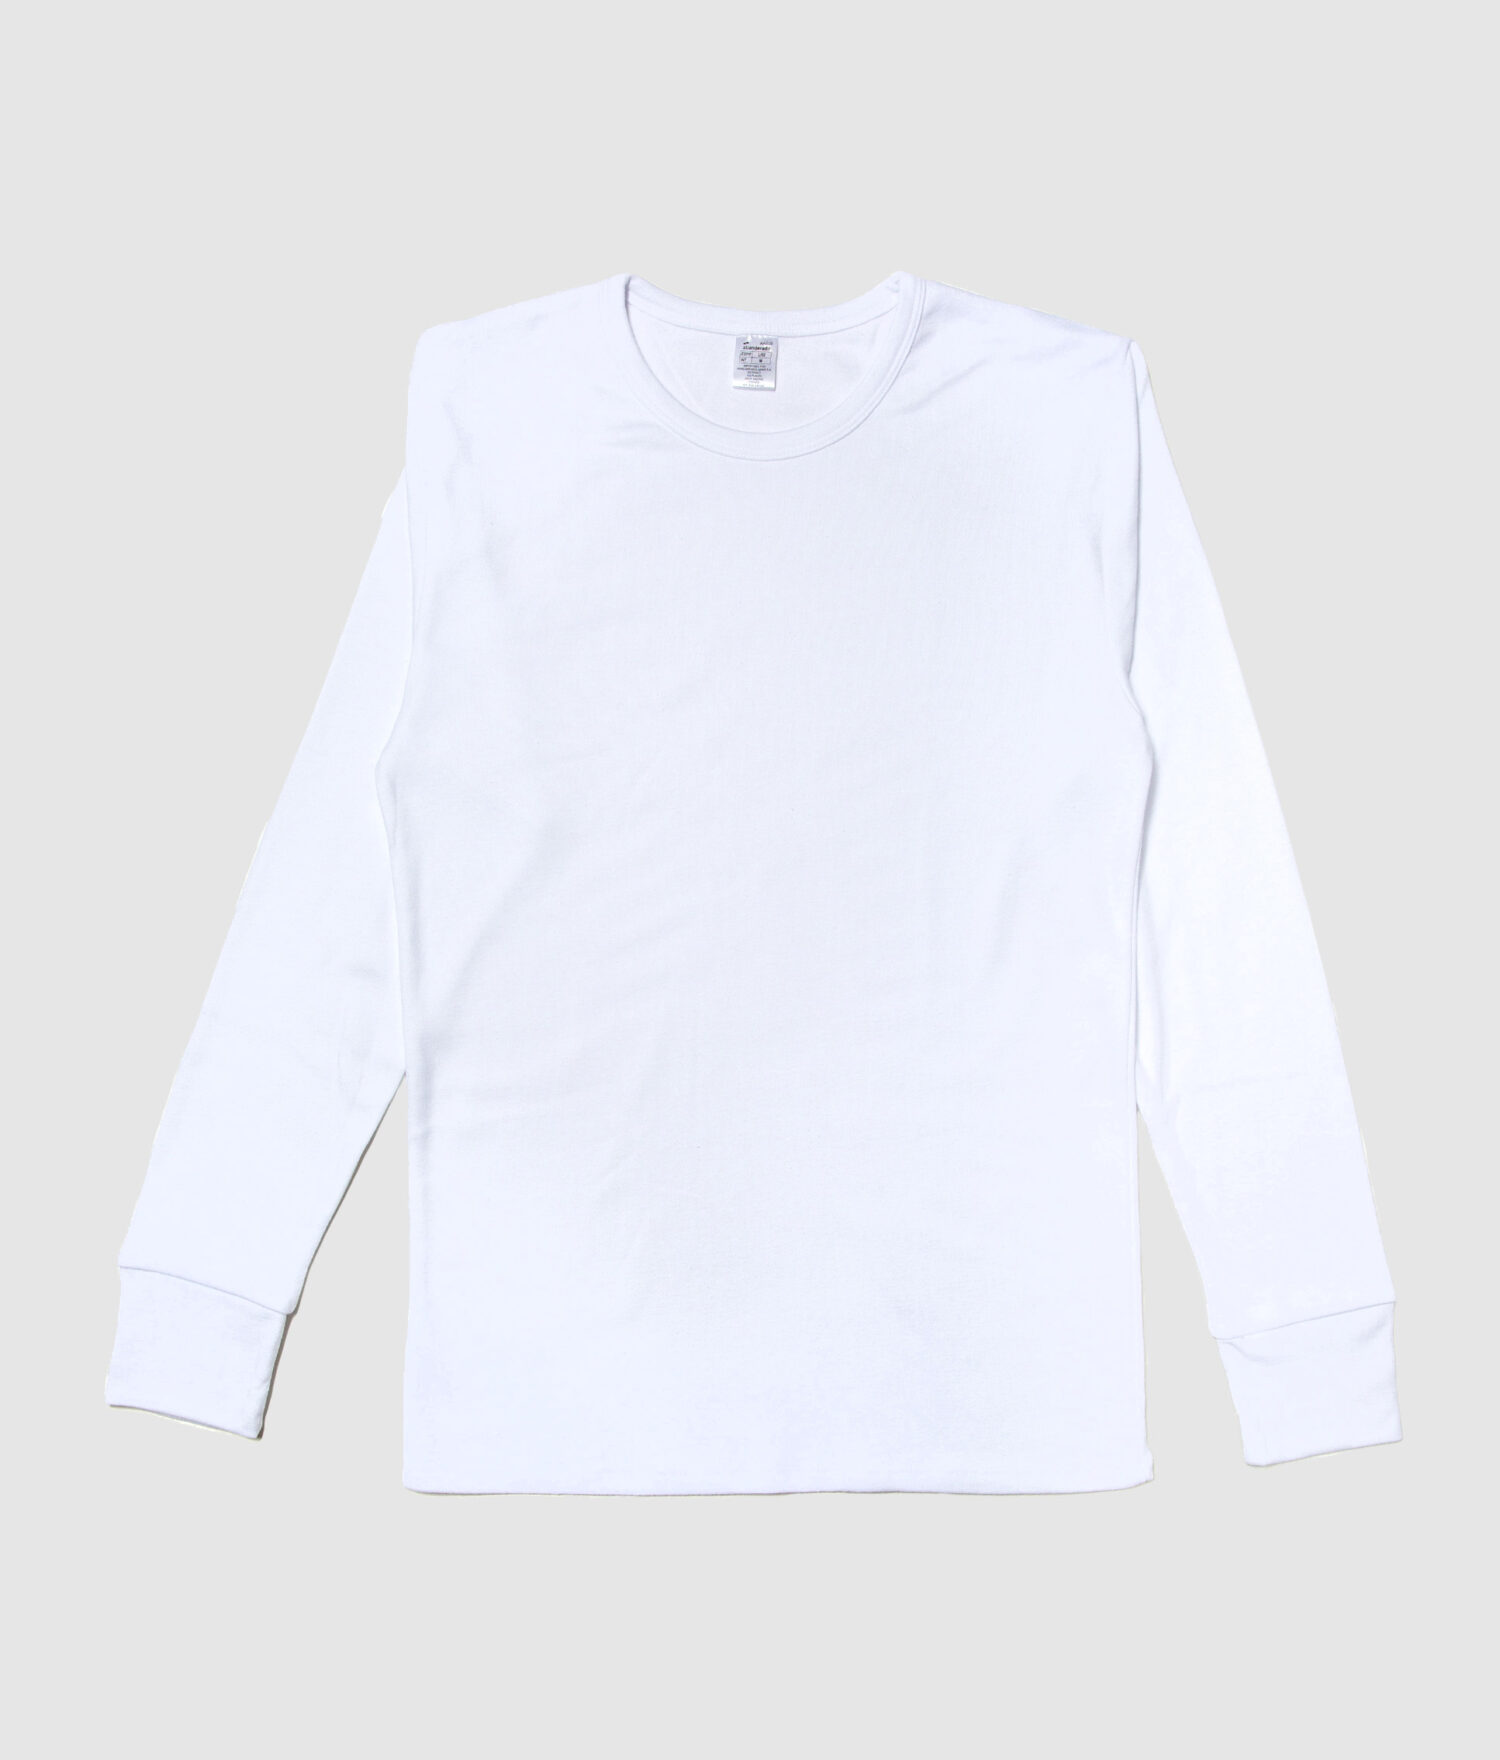 Camiseta interior térmica m/l hombre fibra de invierno